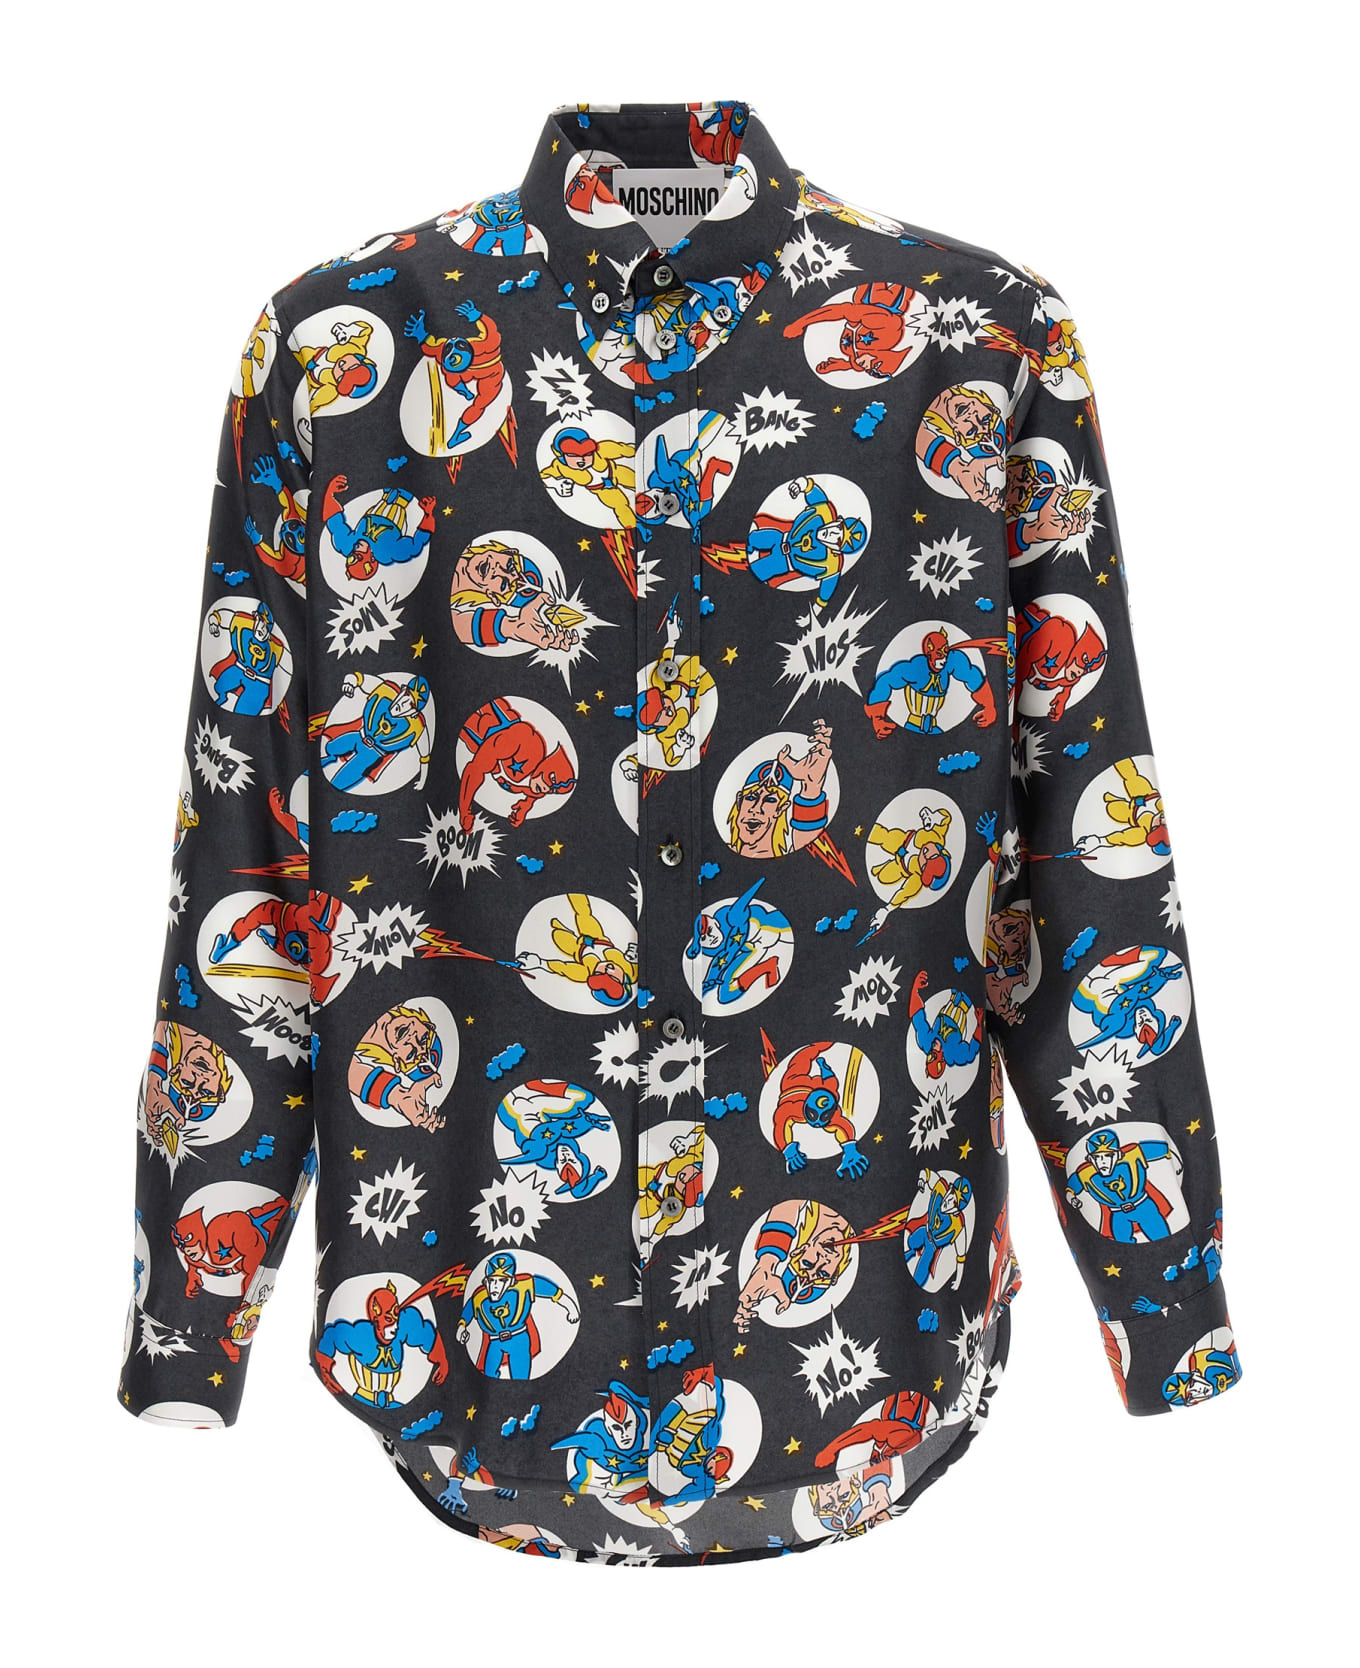 Moschino Fantasy Cartoon Shirt - Multicolor シャツ